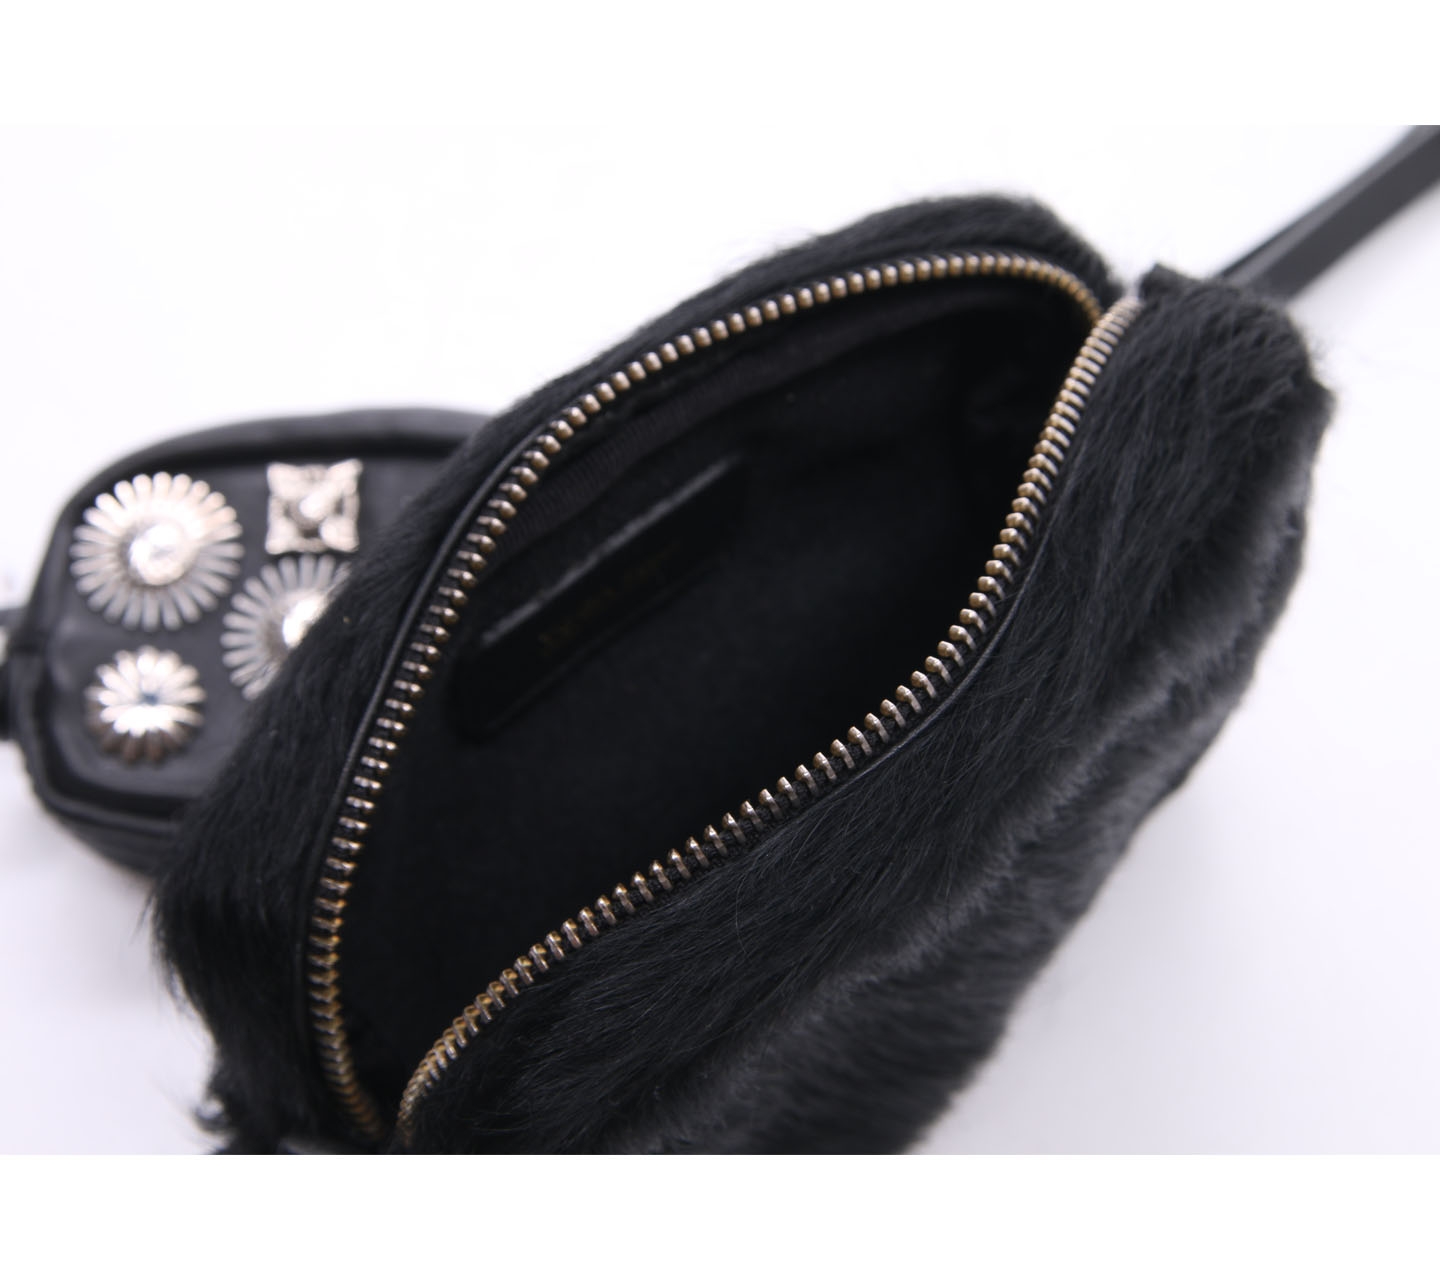 Toga Pulla Black Fur Belt Sling Bag